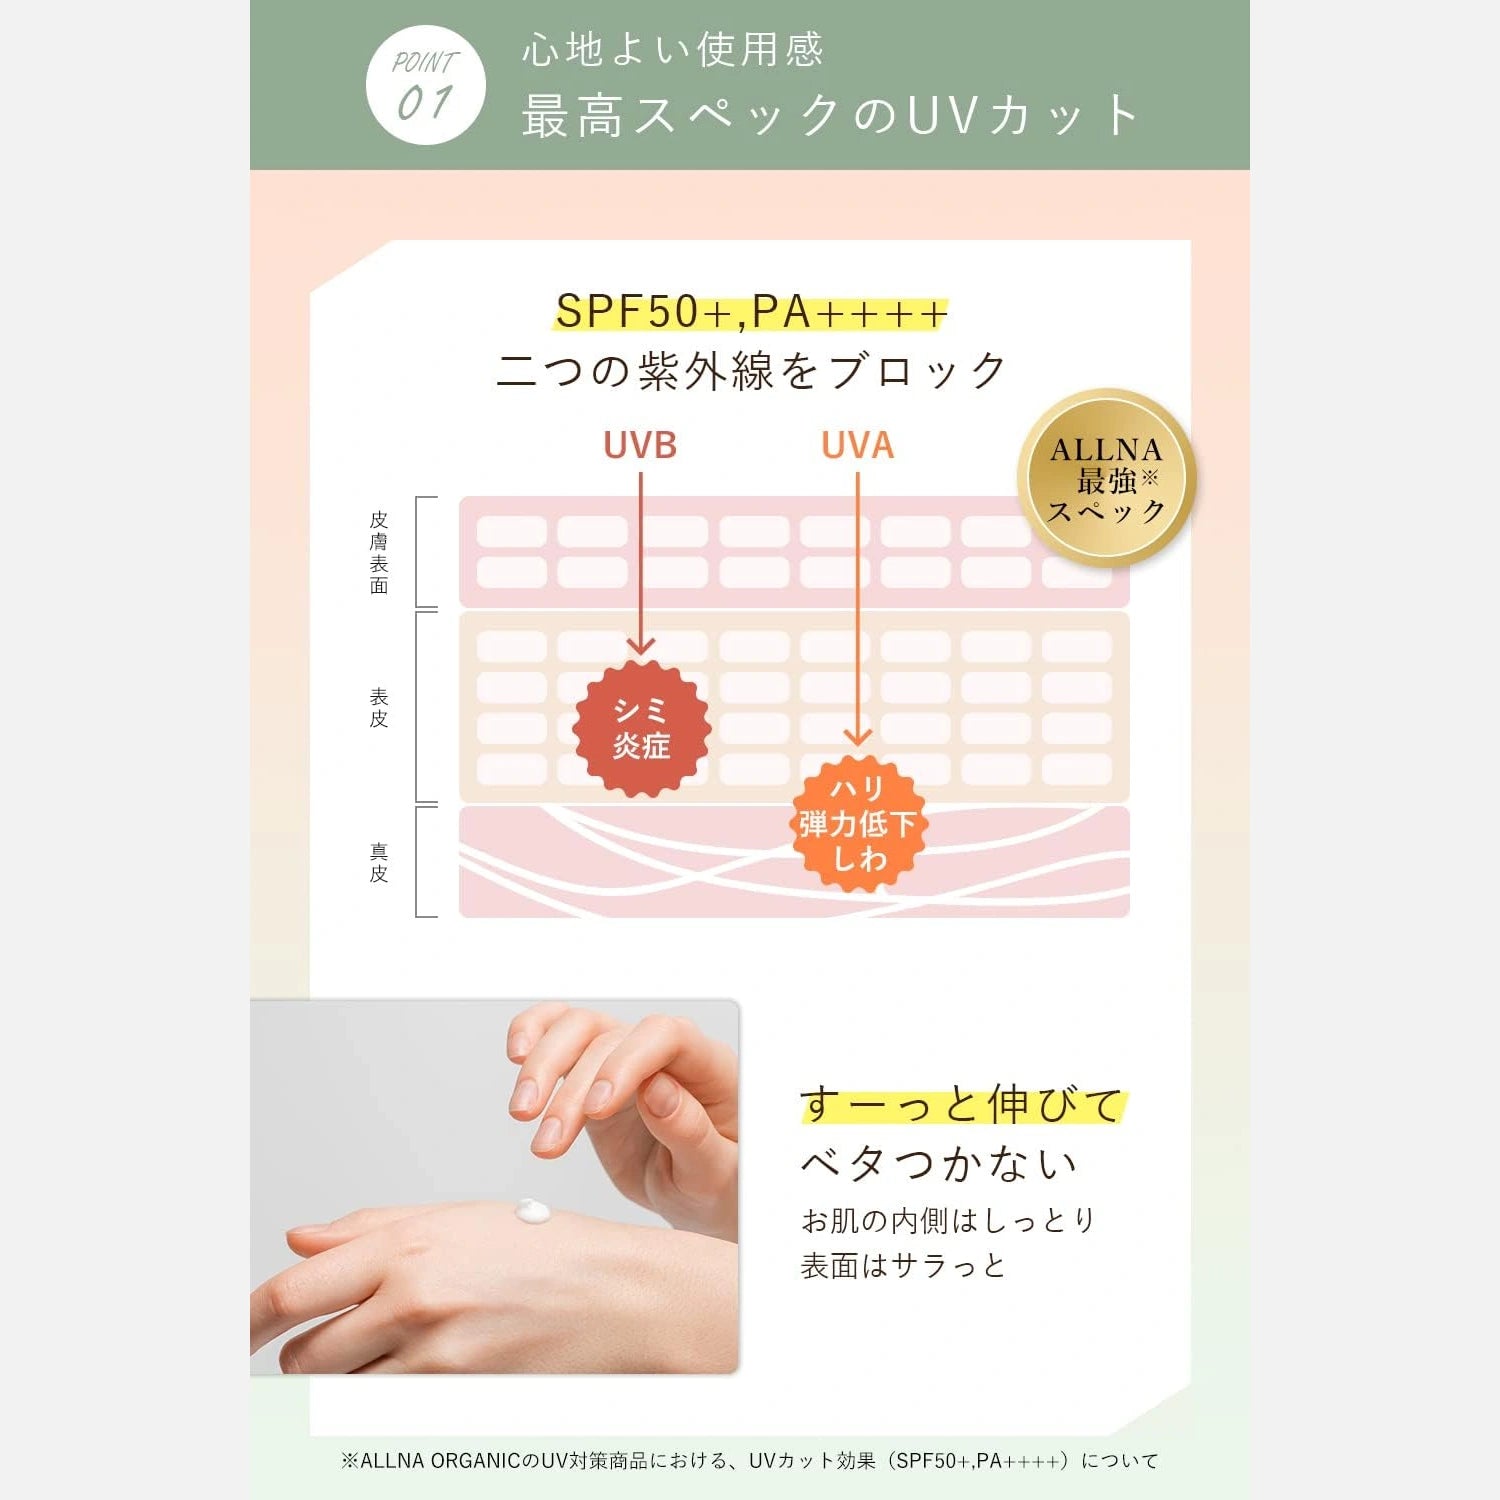 Allna Organic Sunscreen SPF50+/PA++++ 50g - Buy Me Japan